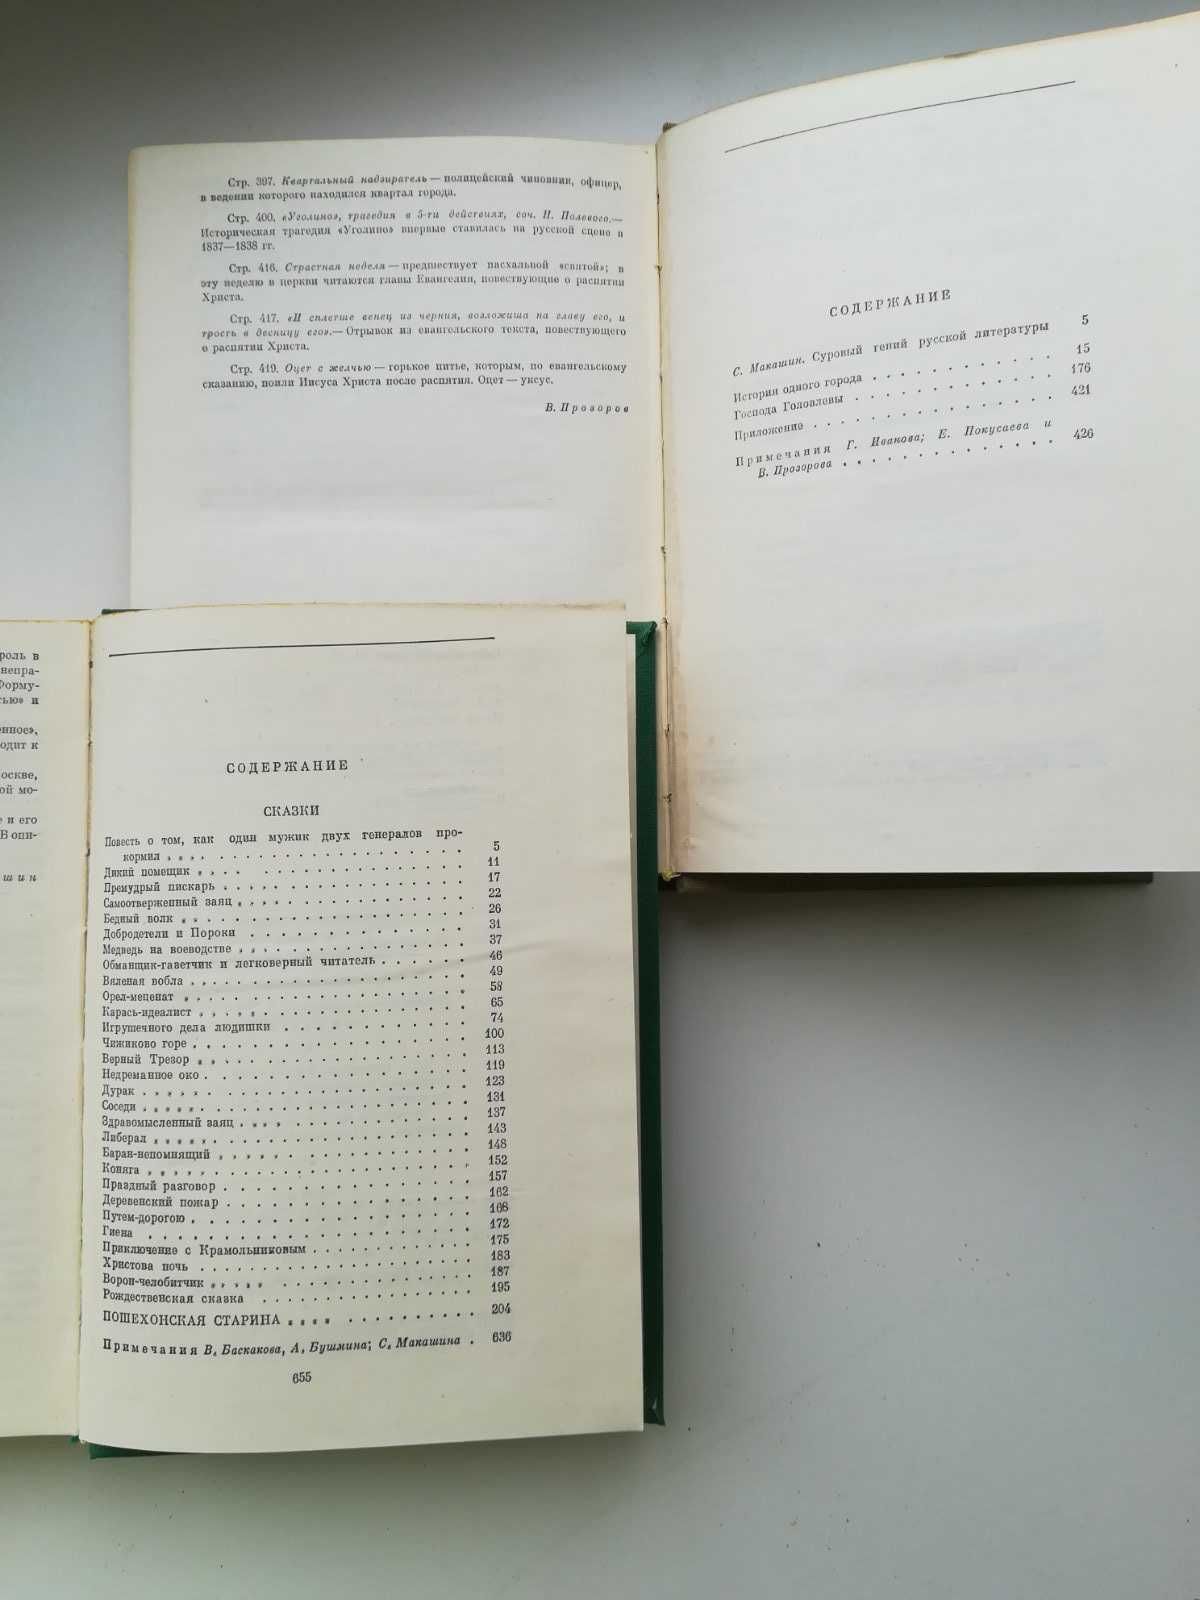 М.Е. Салтыков-Щедрин. Избранные сочинения в двух томах